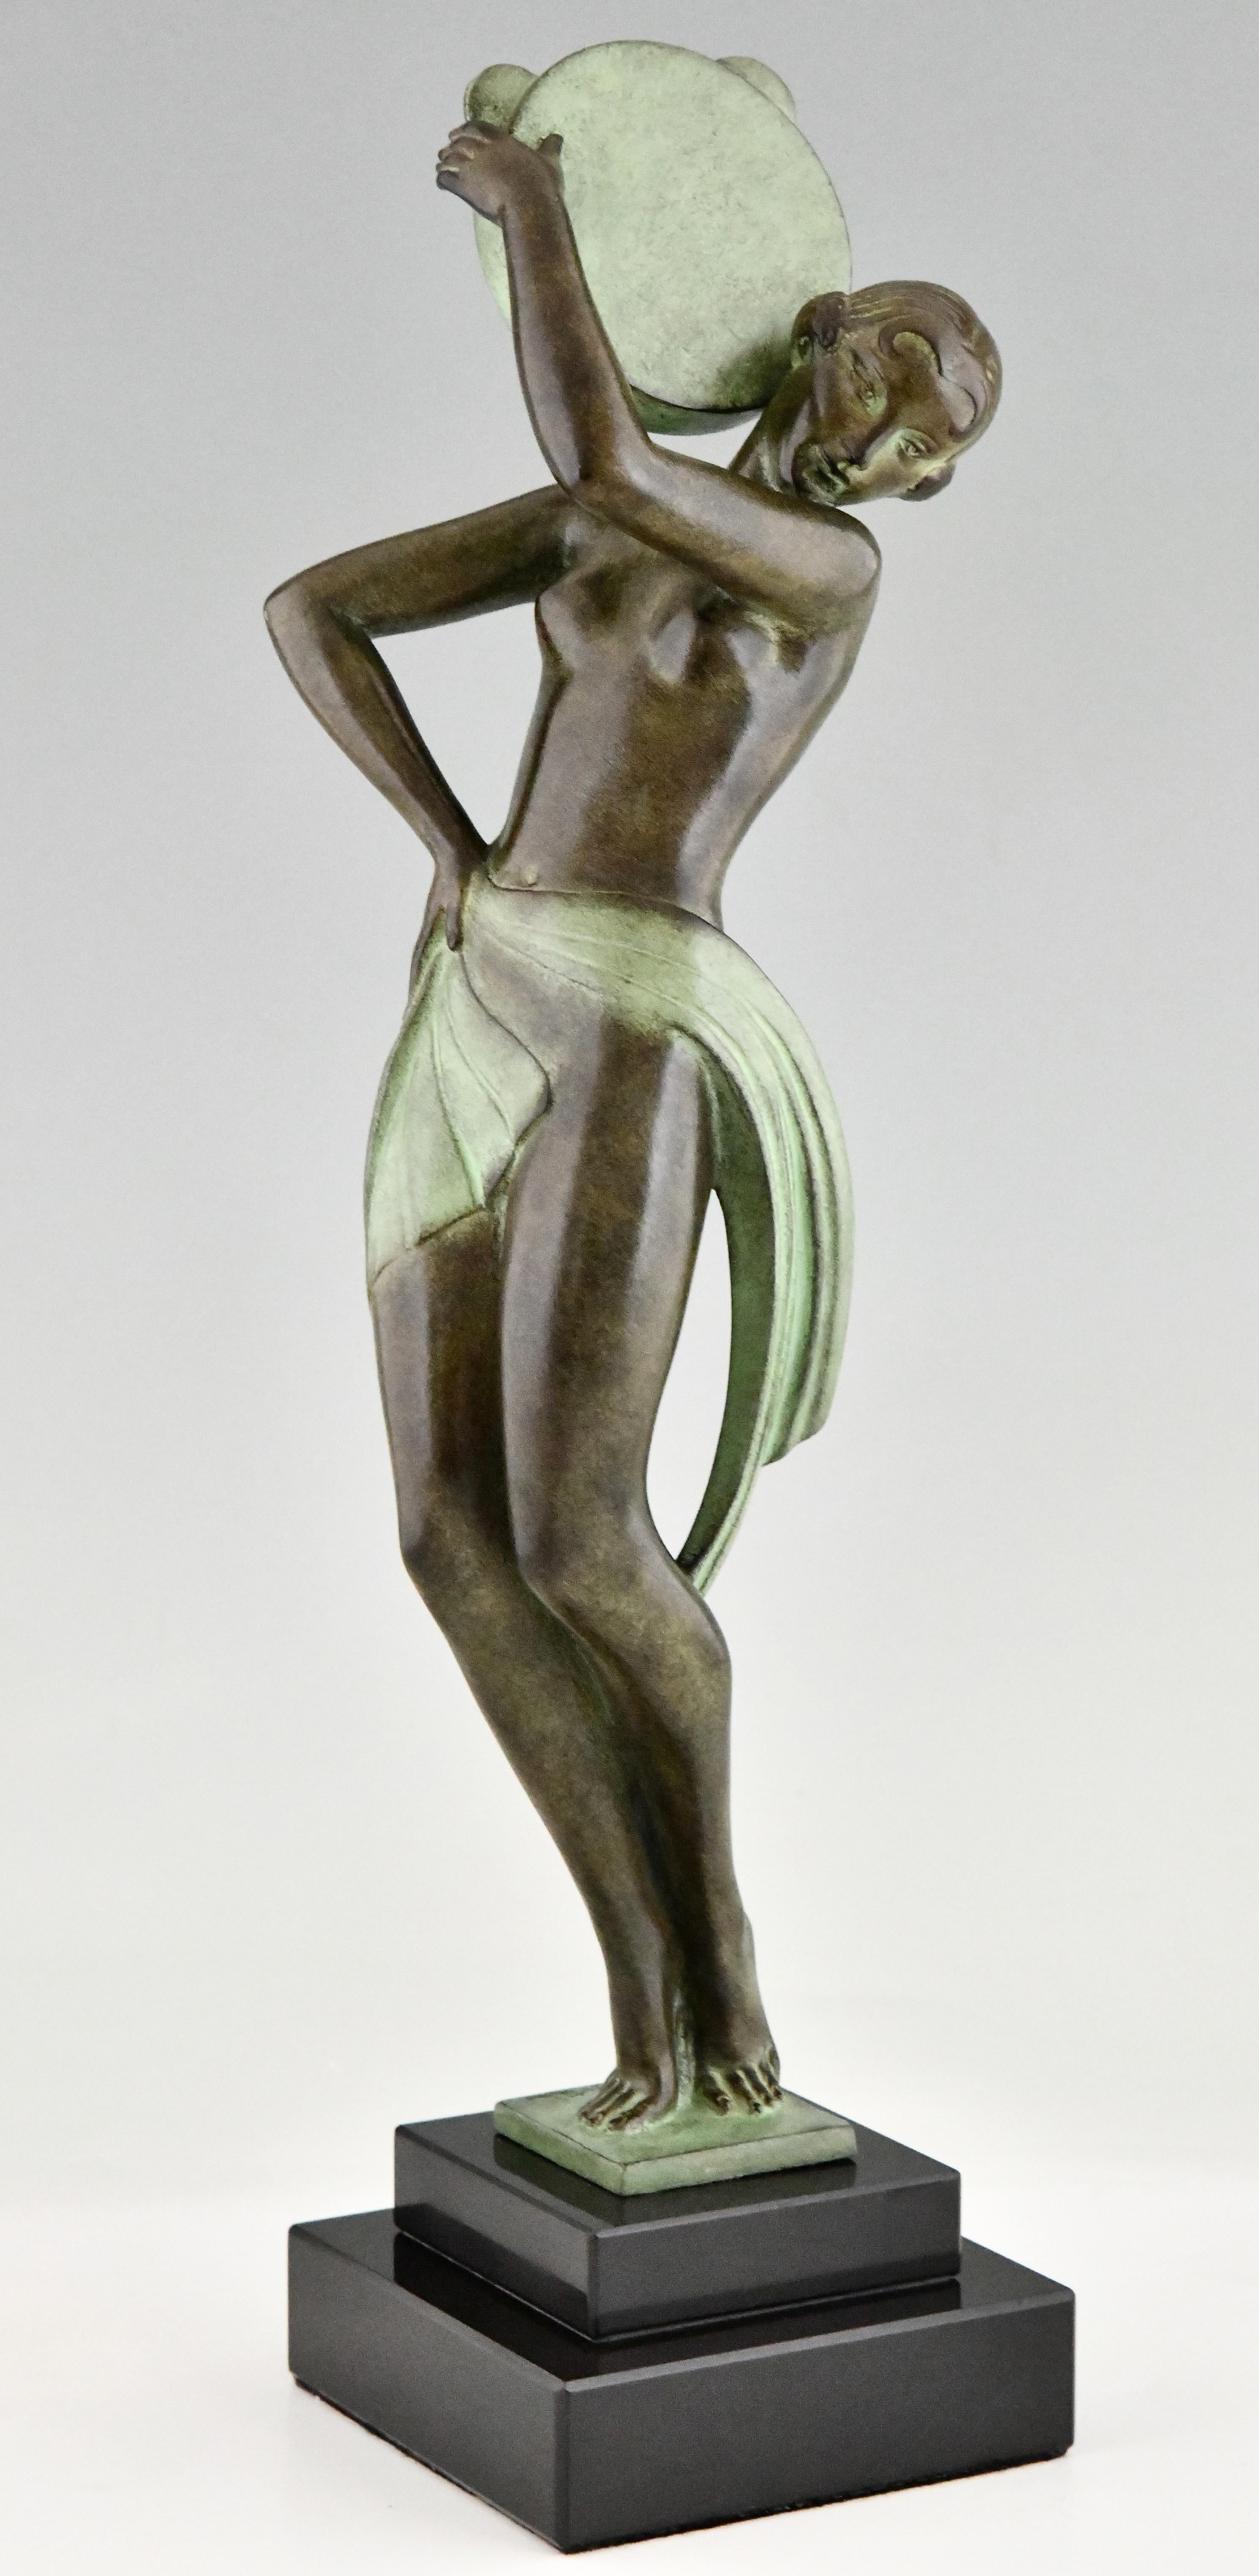 Art Deco Style Skulptur Tänzerin mit Tamburin FARANDOLLE von Fayral, Pseudonym von Pierre Le Faguays.
Mit dem Siegel der Gießerei Max Le Verrier. 
Patiniertes Kunstmetall auf einem schwarzen Marmorsockel. 
Entwurf 1930. 
Posthume zeitgenössische